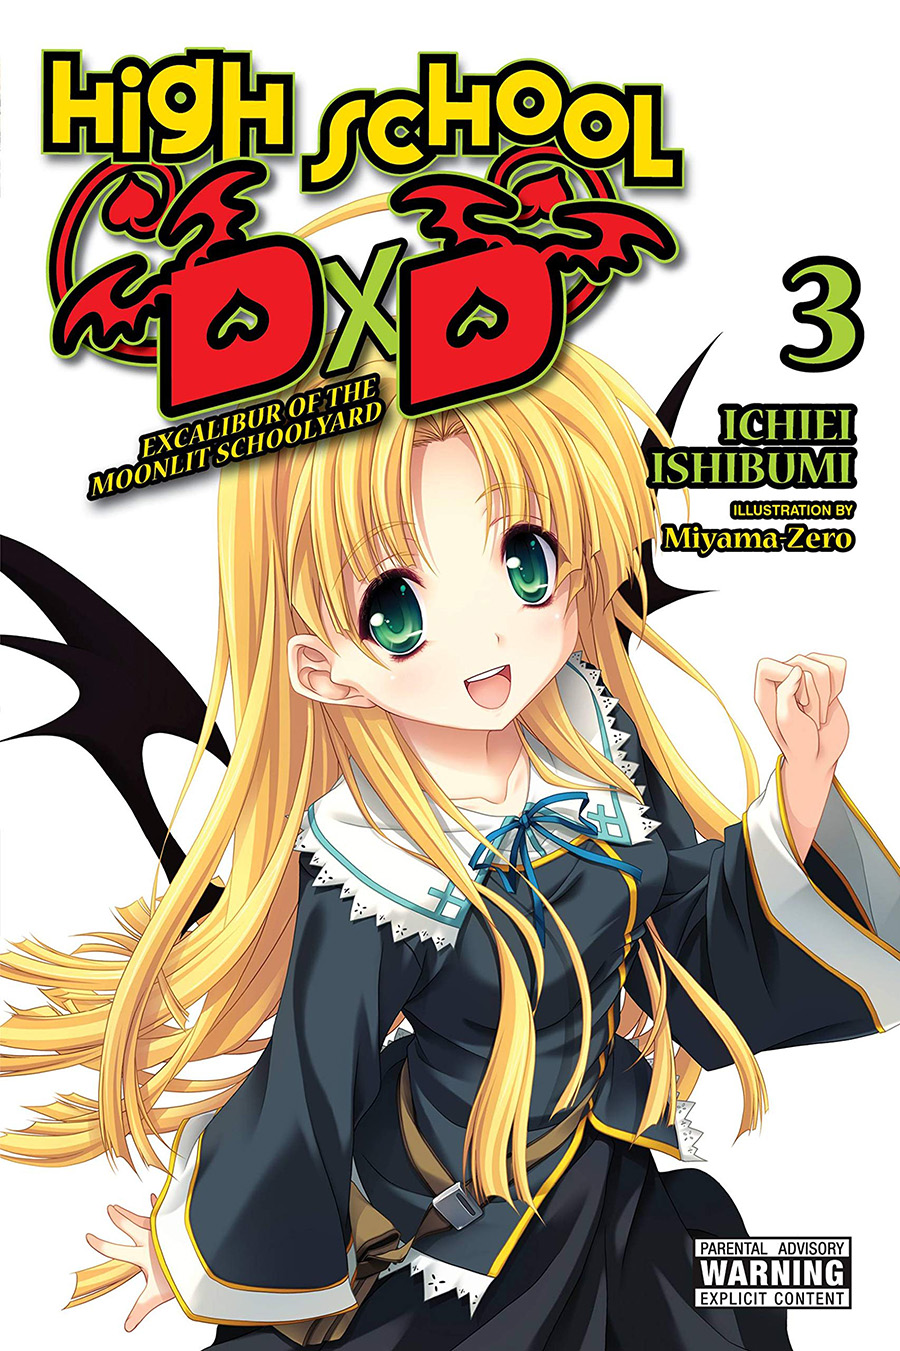 High School DxD Light Novel Vol 3 Excalibur Of The Moonlit Schoolyard